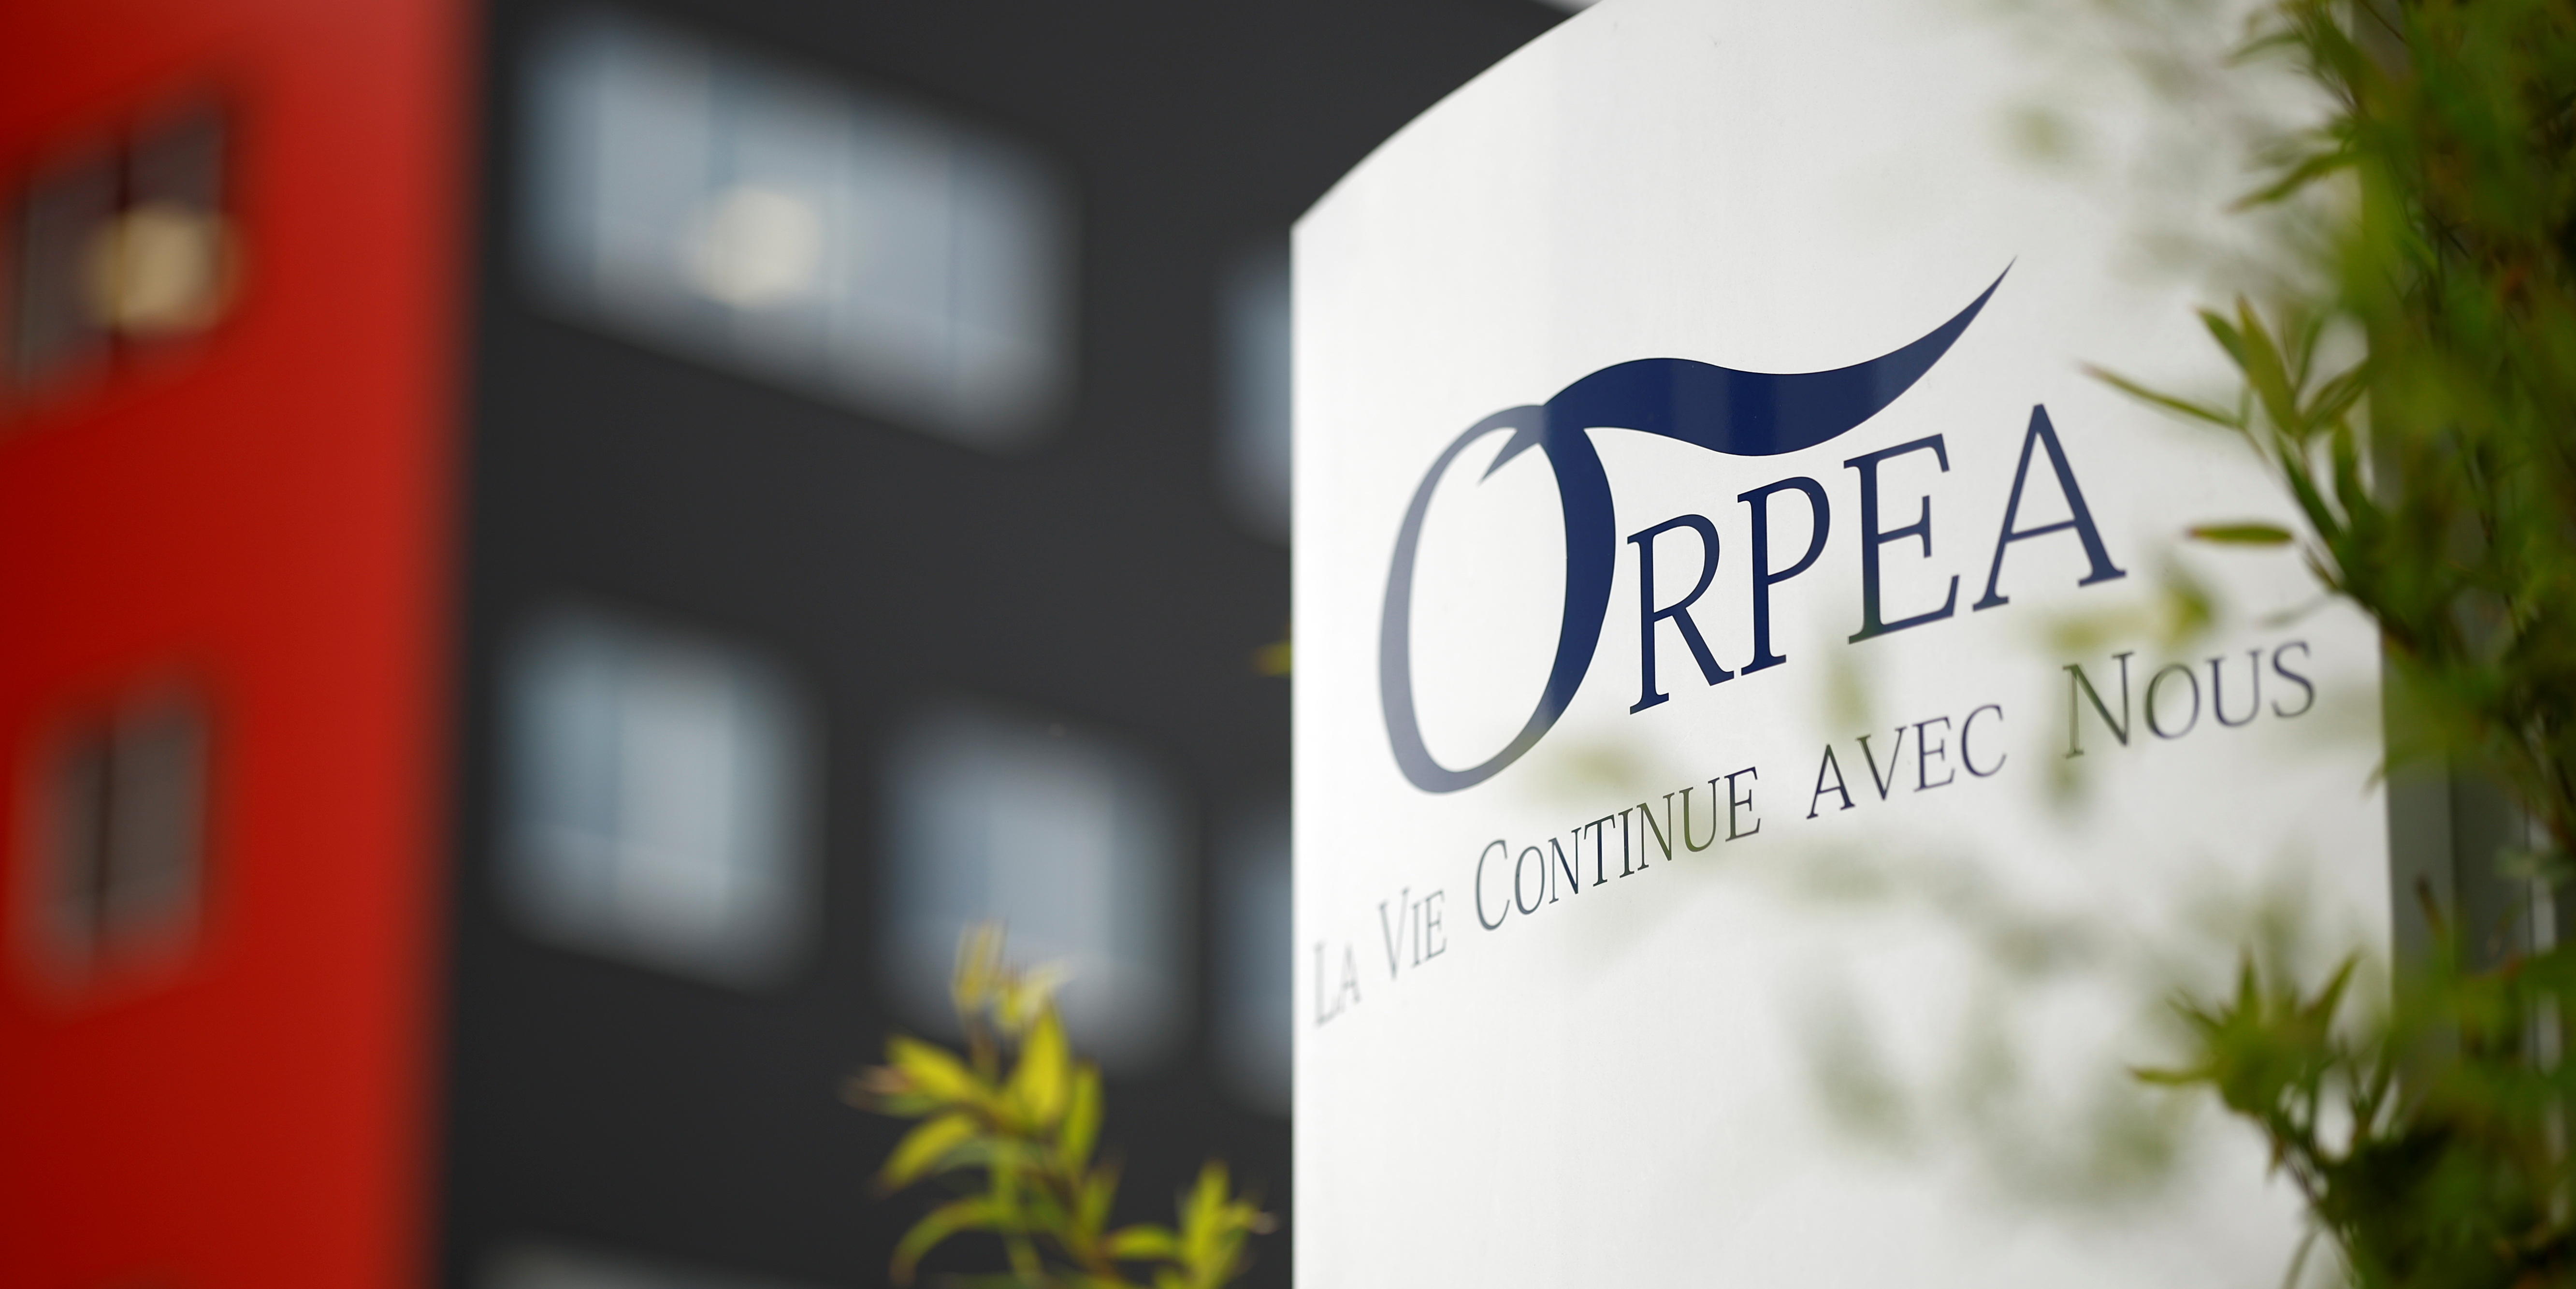 Le groupe Orpea obtient 600 millions d'euros de crédits supplémentaires